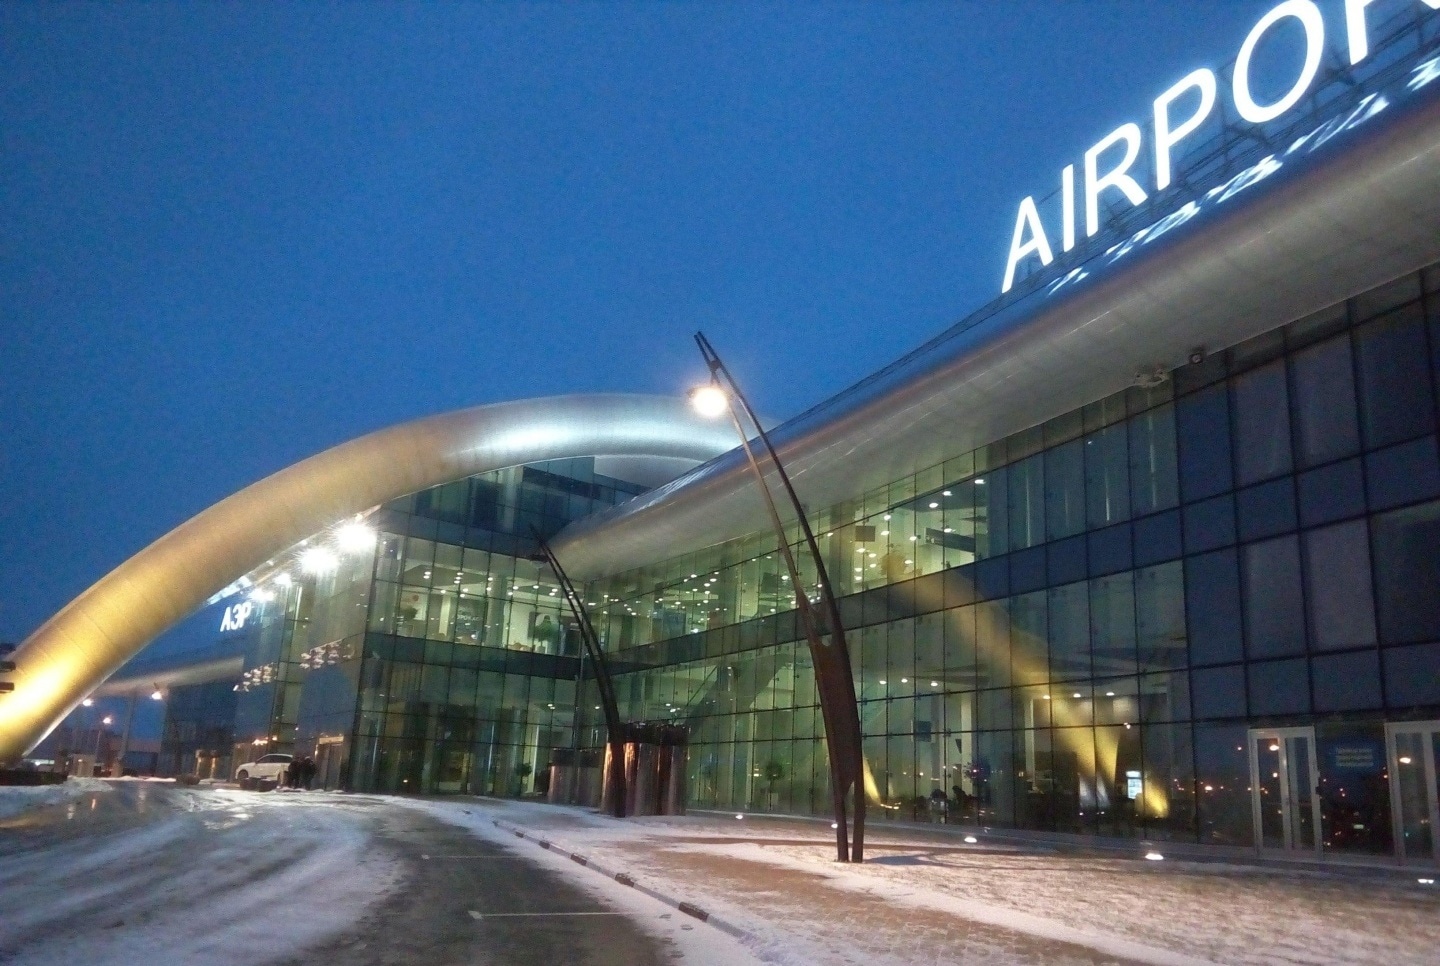 Описание и основная информация о международном аэропорте белгорода. как добраться из города?